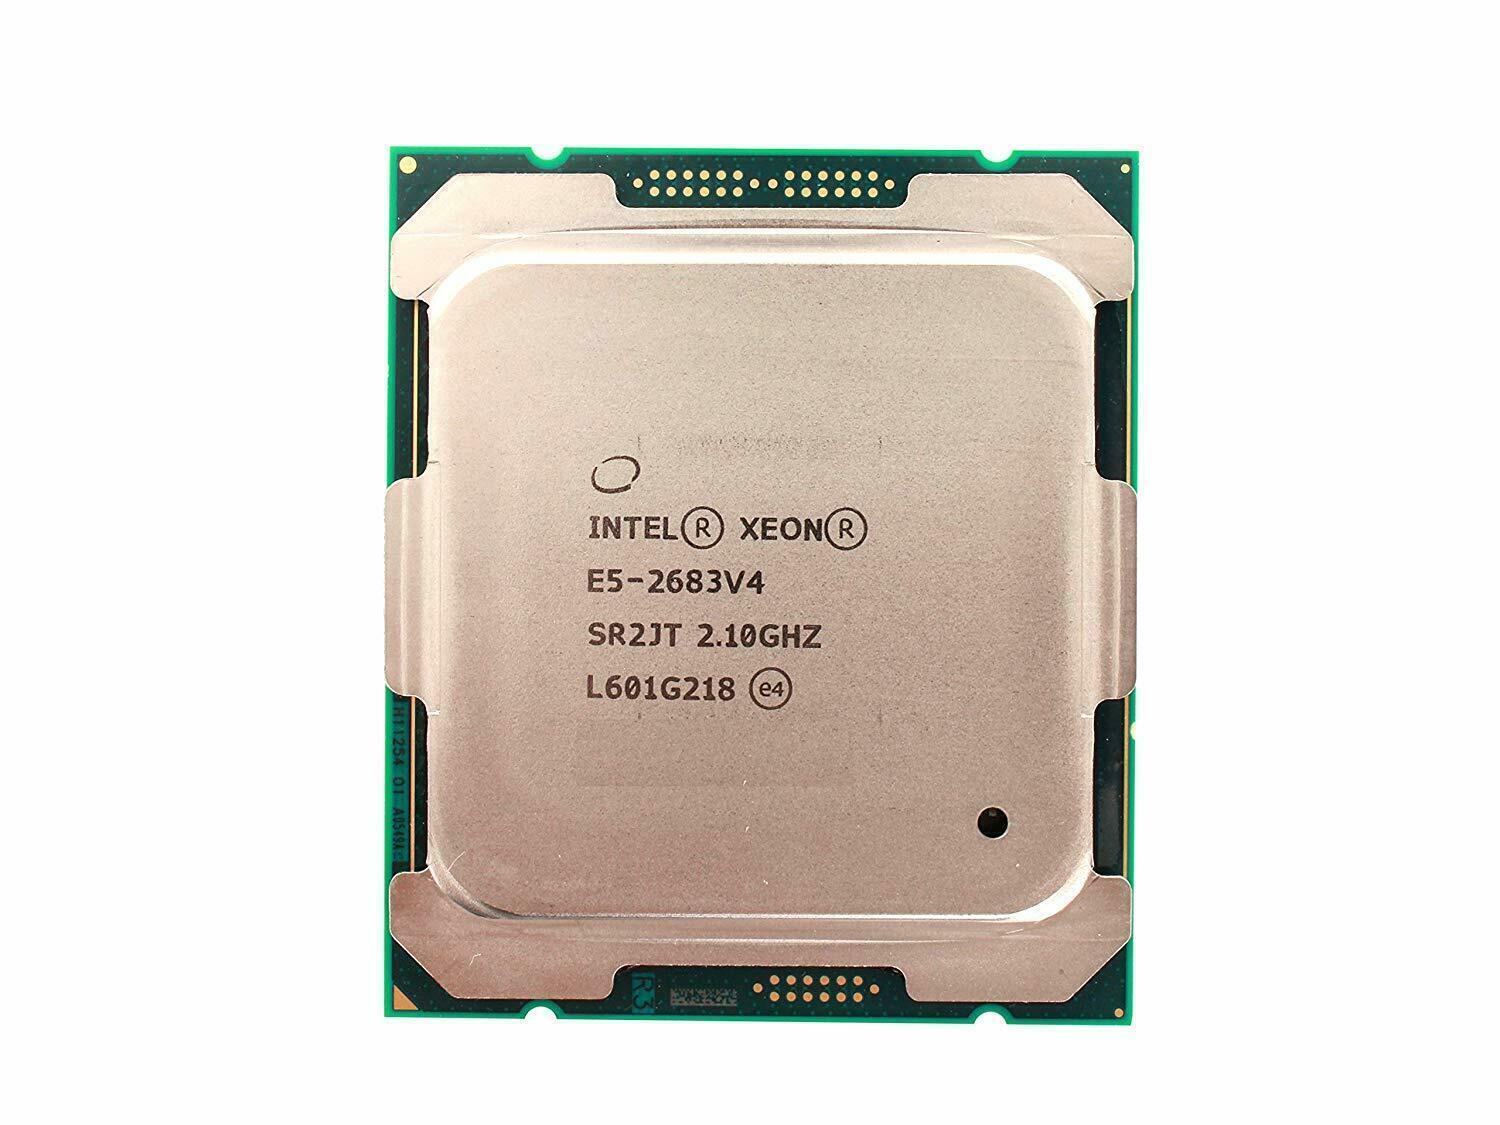 Intel Xeon E5-2683 v4 2.1GHz 16-Core Processor CPU LGA2011 SR2JT